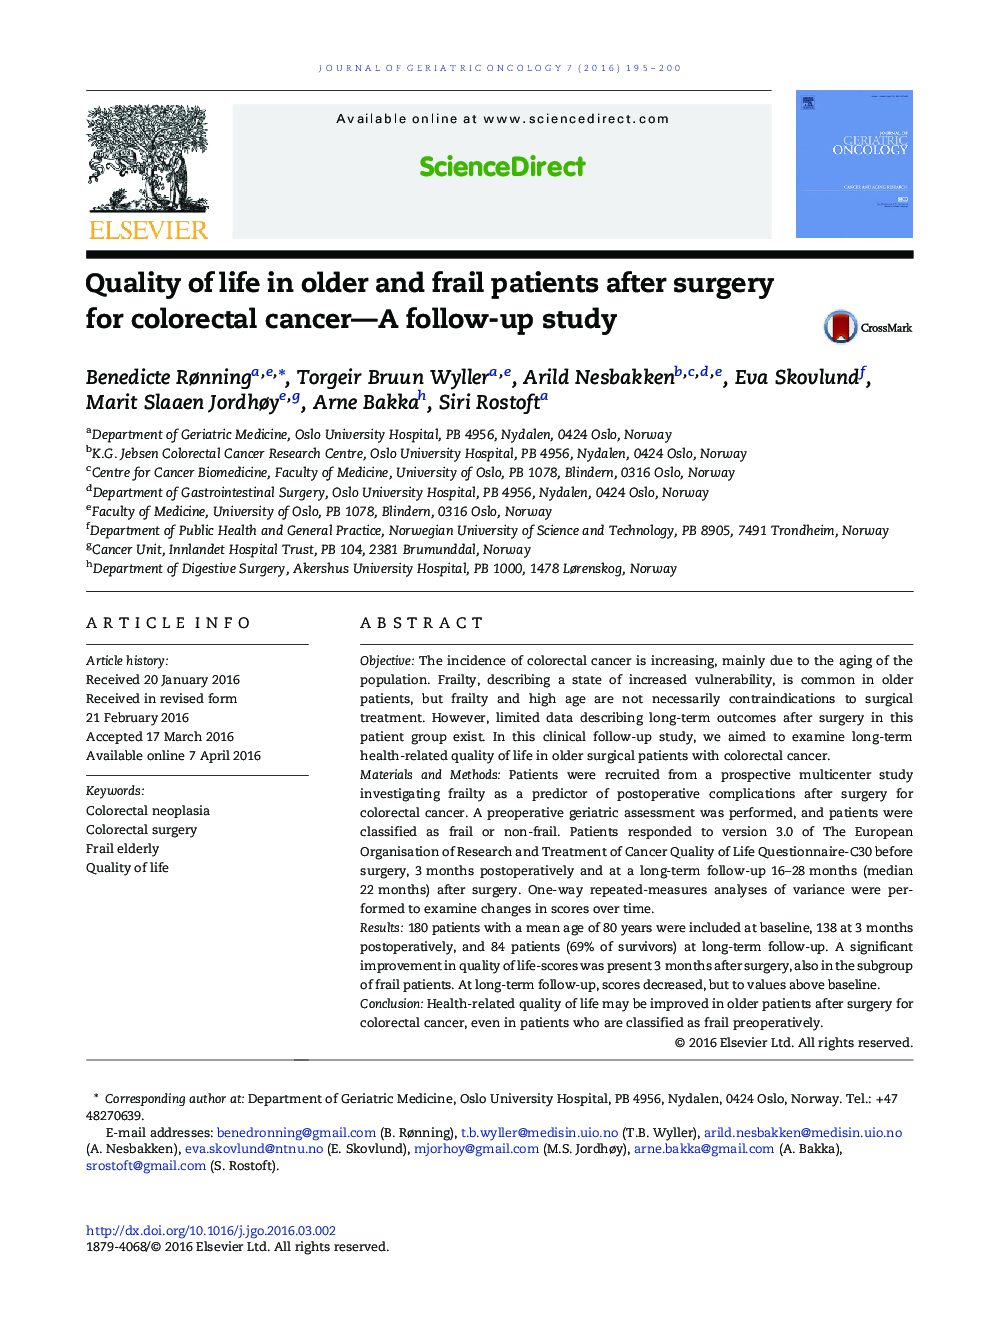 کیفیت زندگی در بیماران مسن تر و ضعیف پس از عمل جراحی سرطان کولورکتال؛ یک مطالعه پیگیری